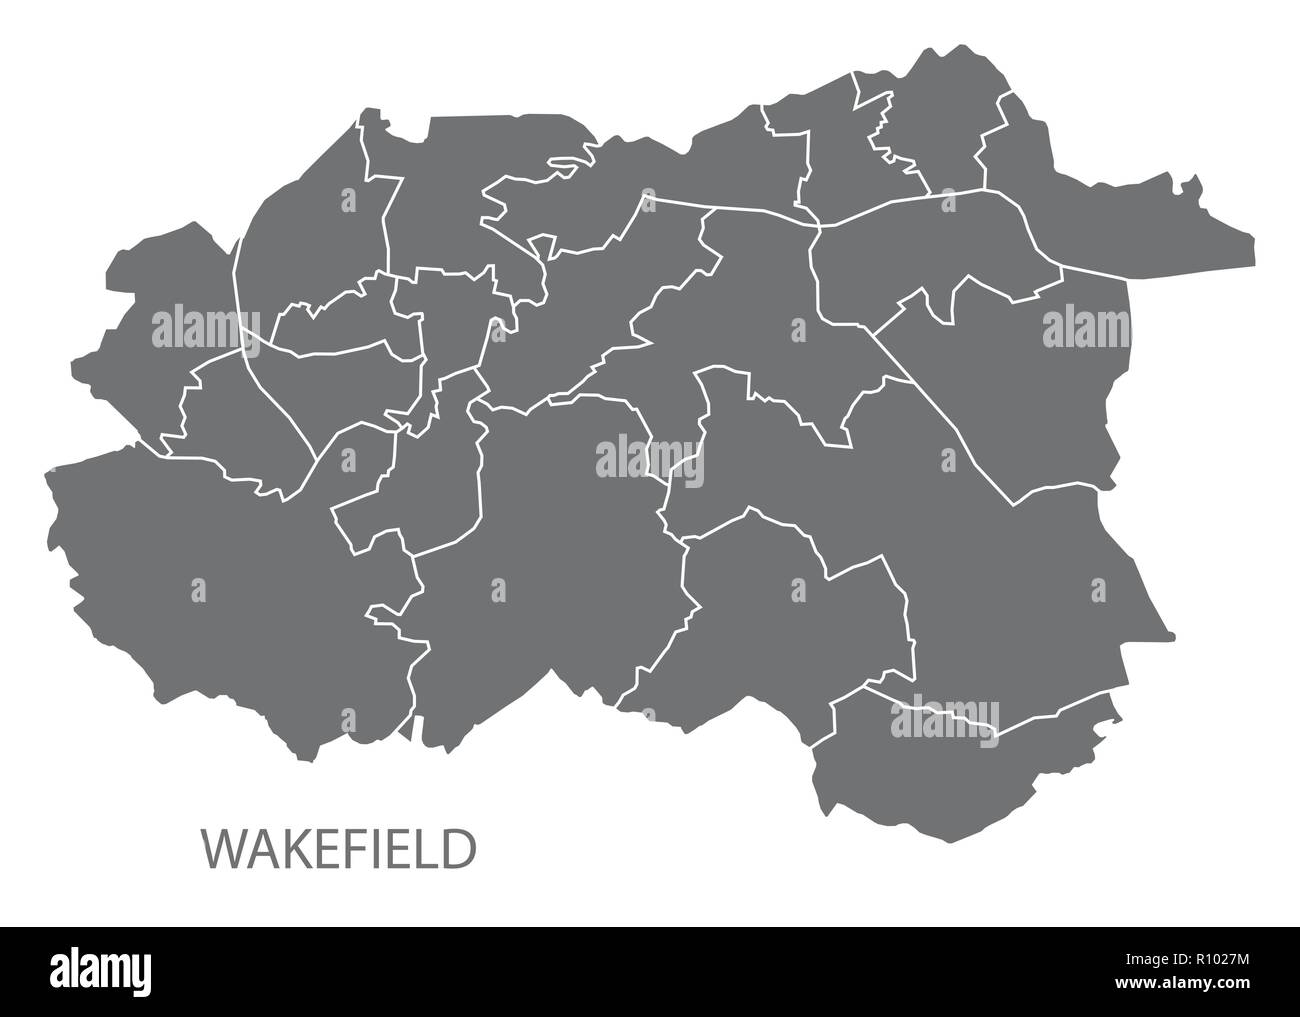 wakefield-mapa-de-la-ciudad-con-salas-forma-de-silueta-ilustraci-n-gris